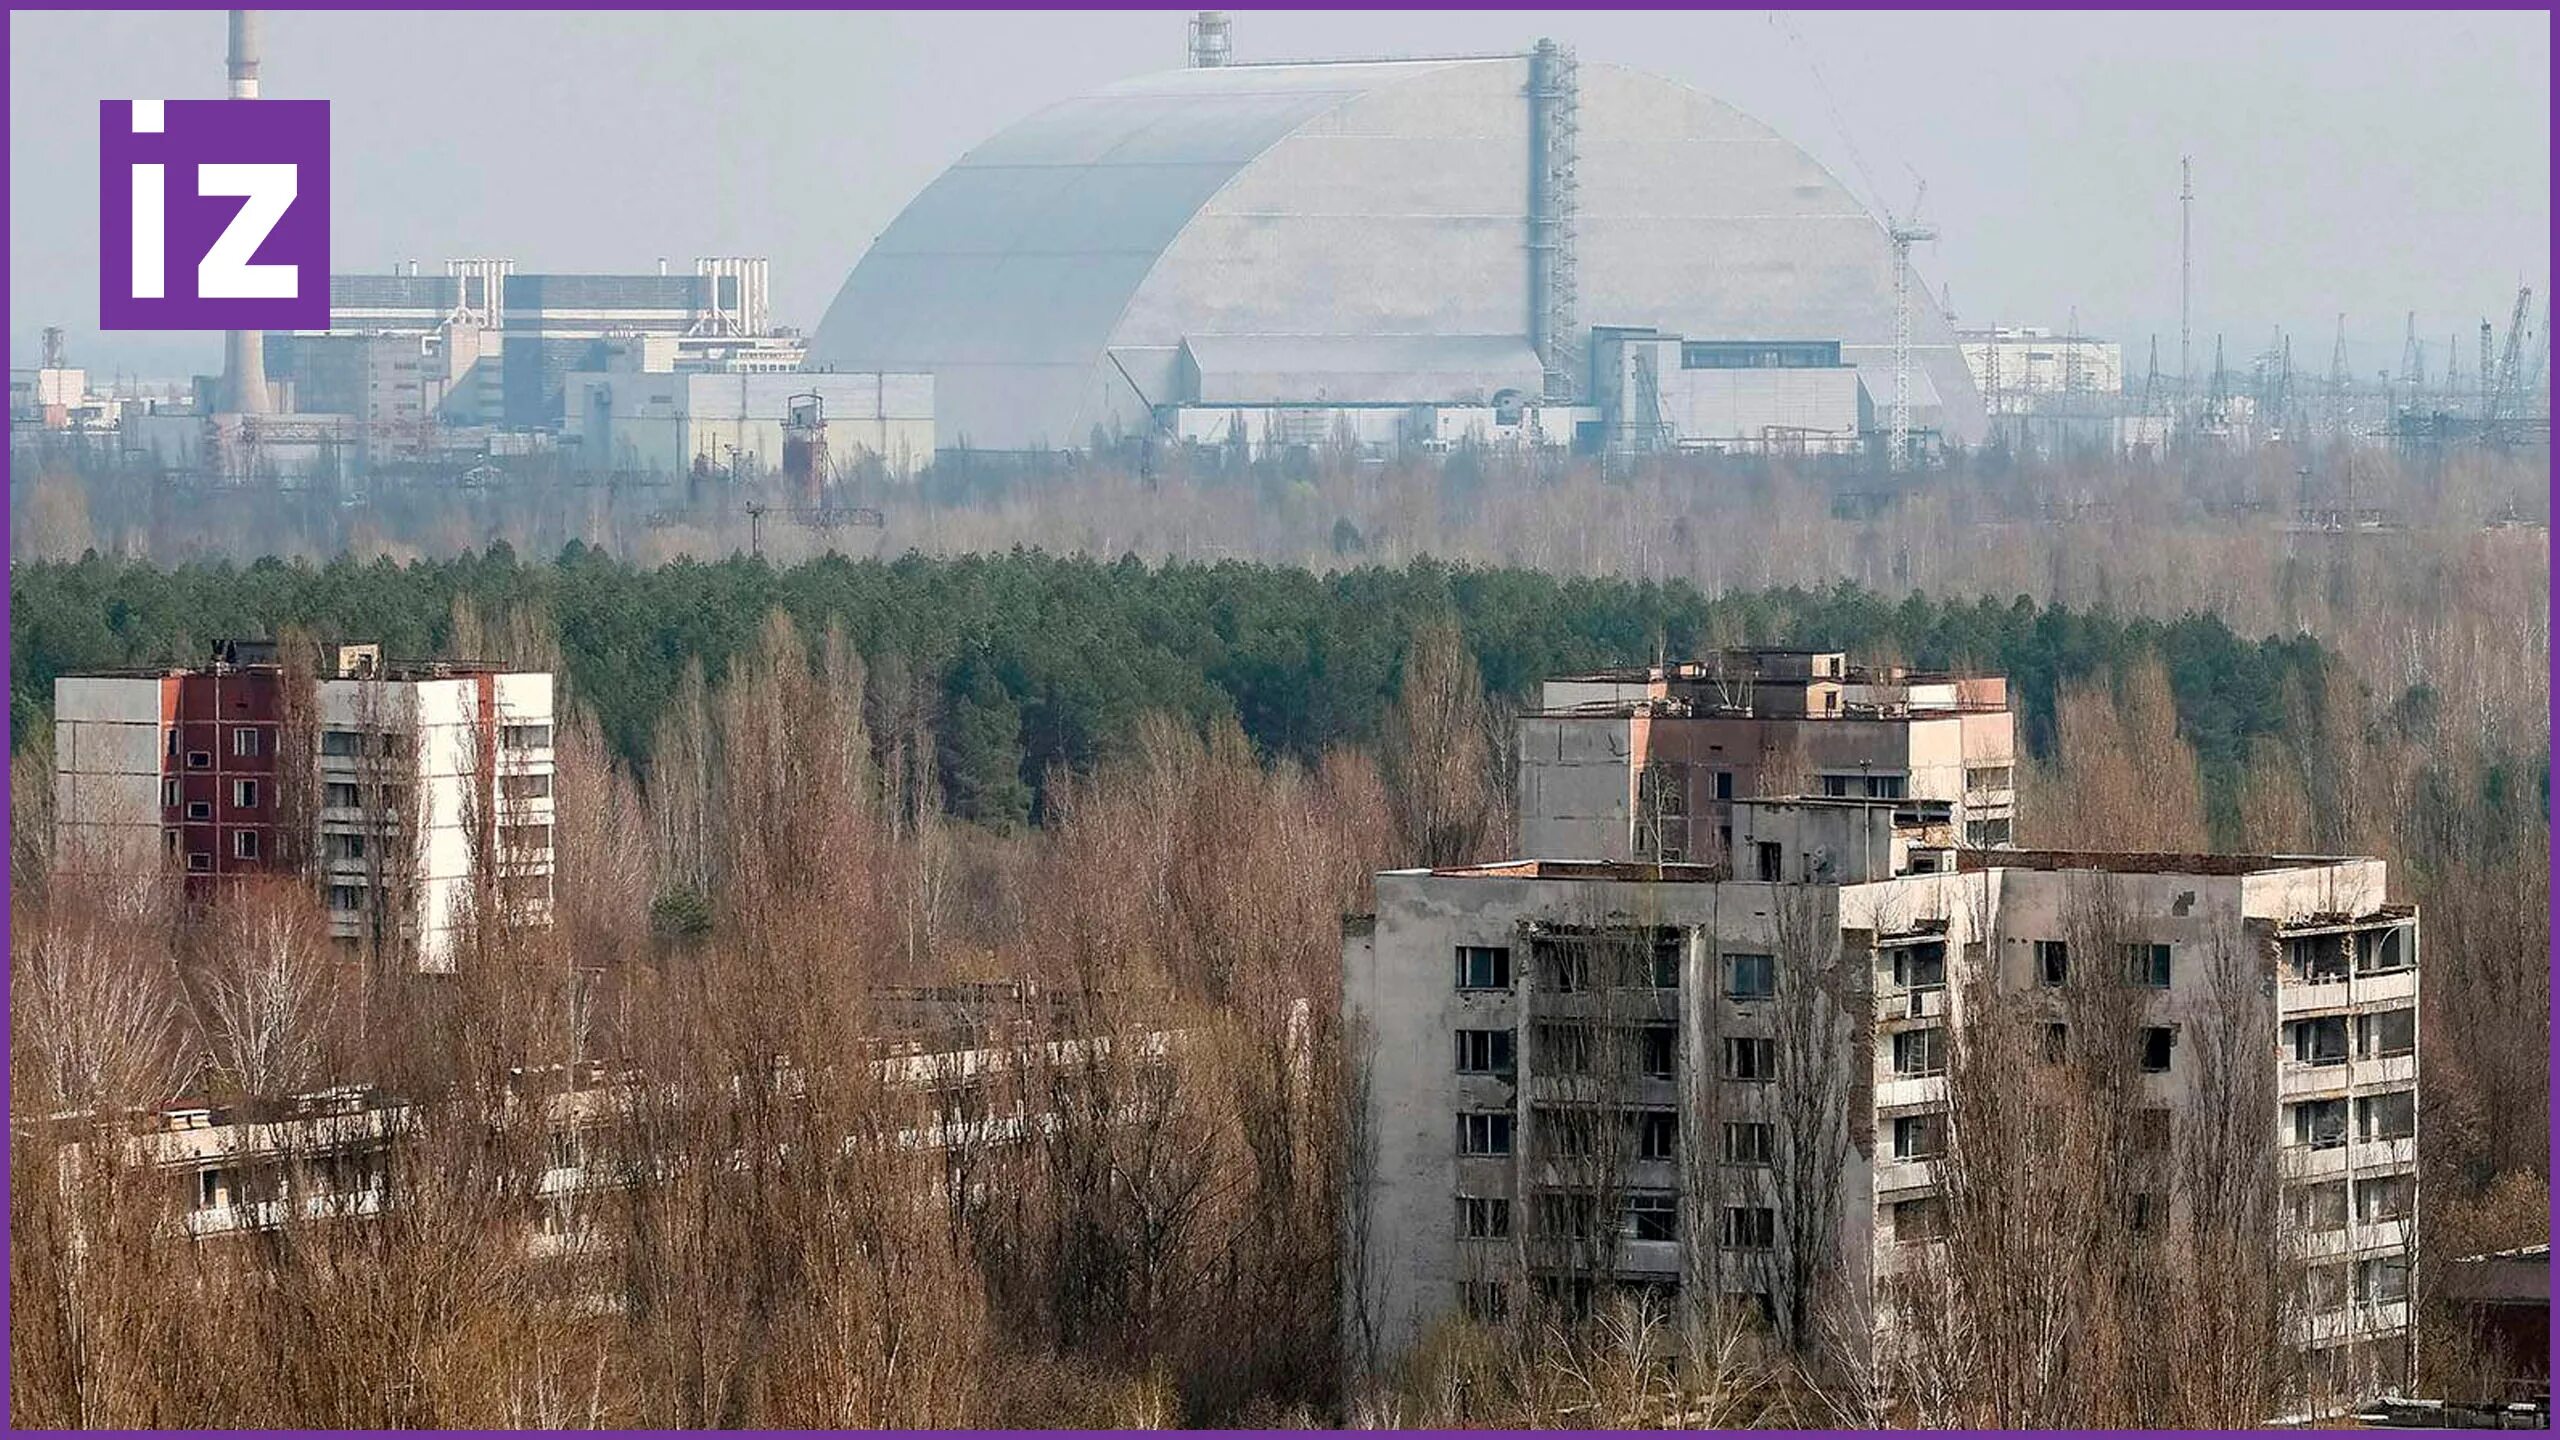 Чернобыль зона отчуждения АЭС. Чернобыльская АЭС Припять. Чернобыль зона АЭС. Чернобыль зона ЧАЭС. Chernobyl zone